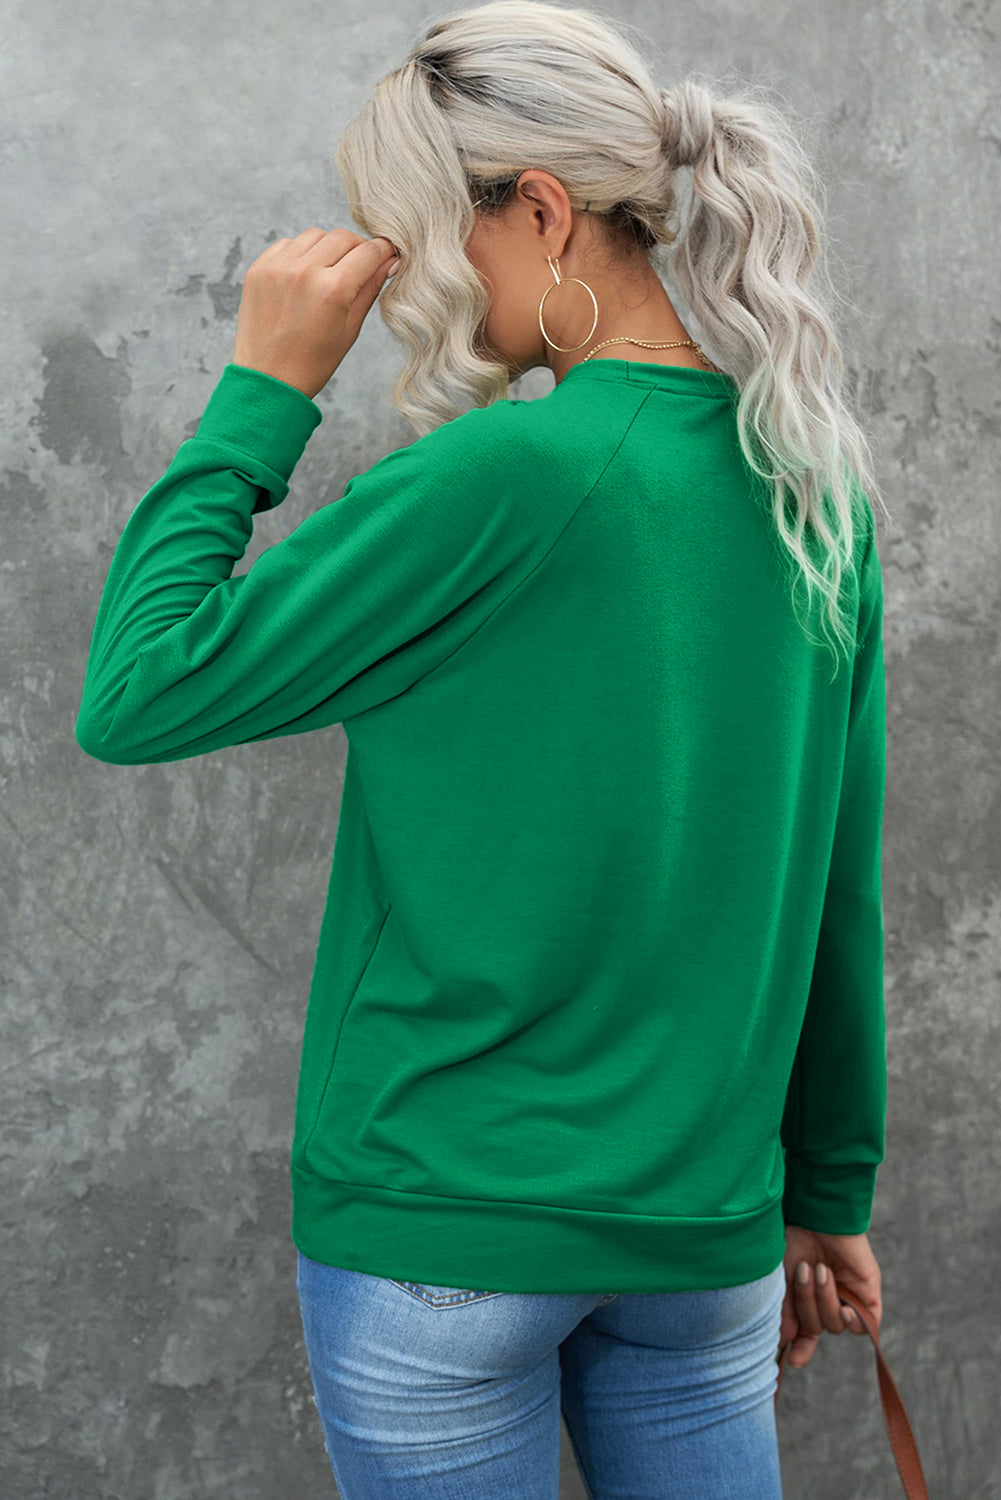 Grünes, einfarbiges Sweatshirt mit Rundhalsausschnitt und Raglanärmeln